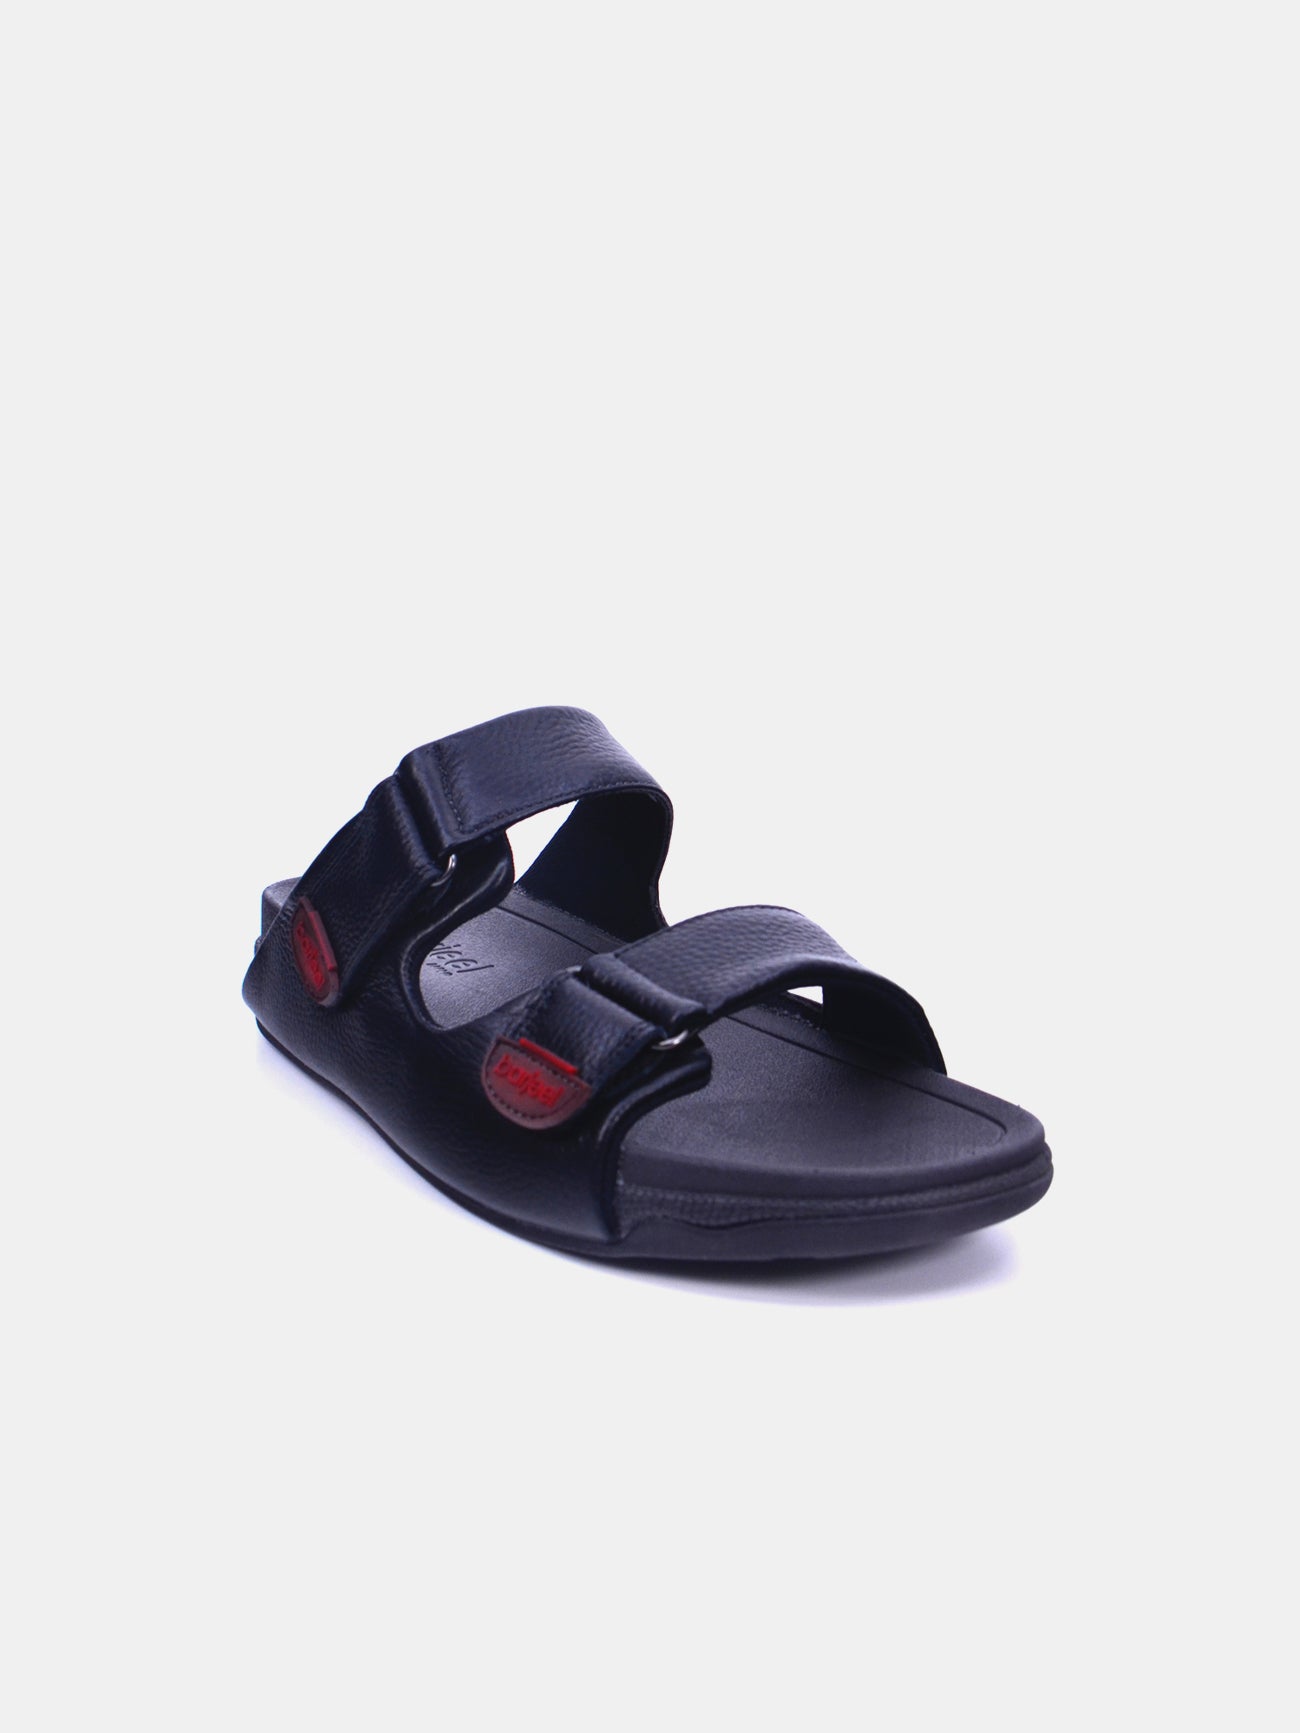 Barjeel Uno 20272 Men's Arabic Sandals #color_Black